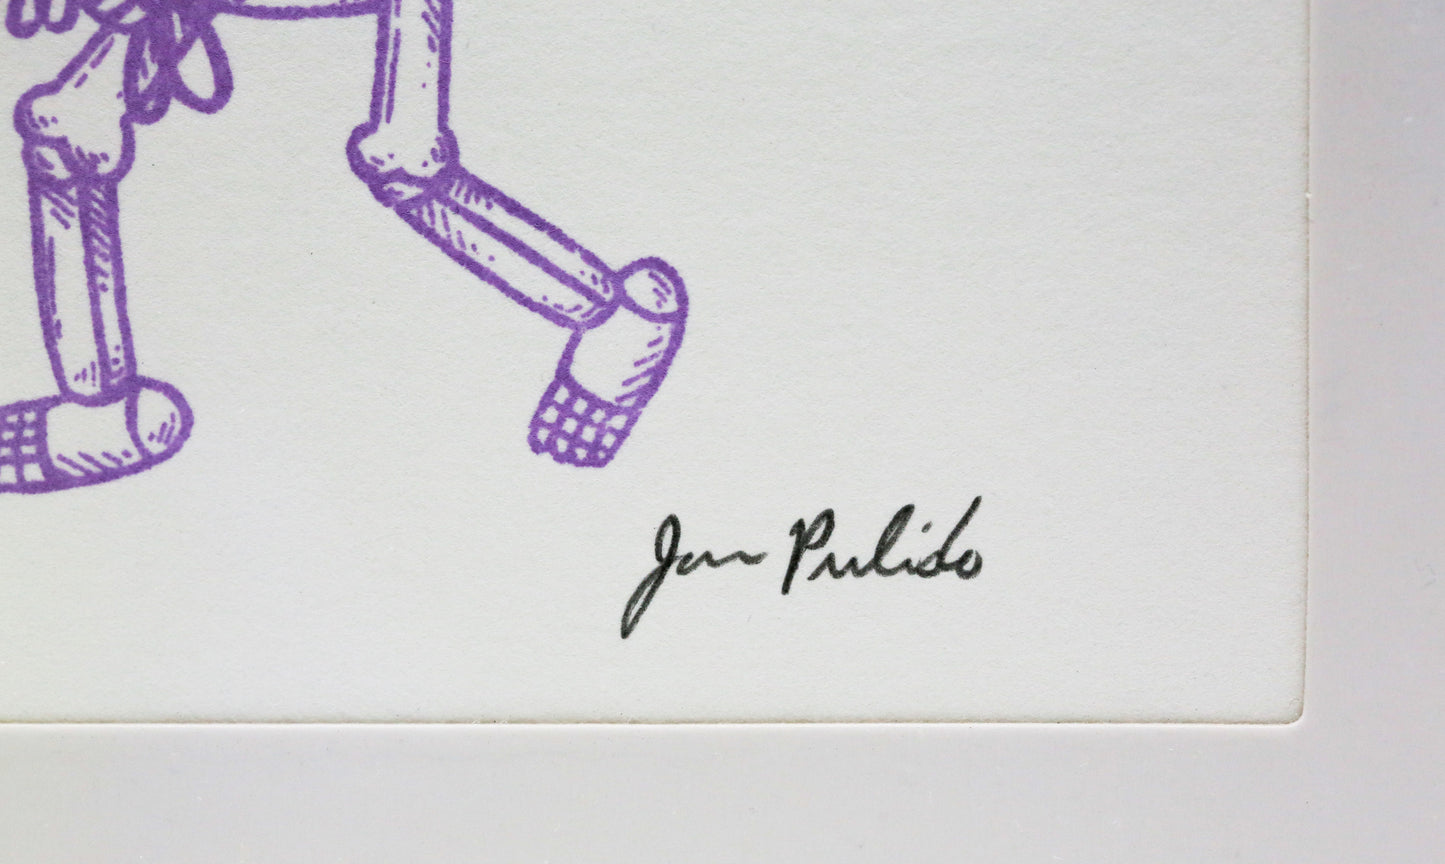 Jose Pulido "Walking the Dogs"